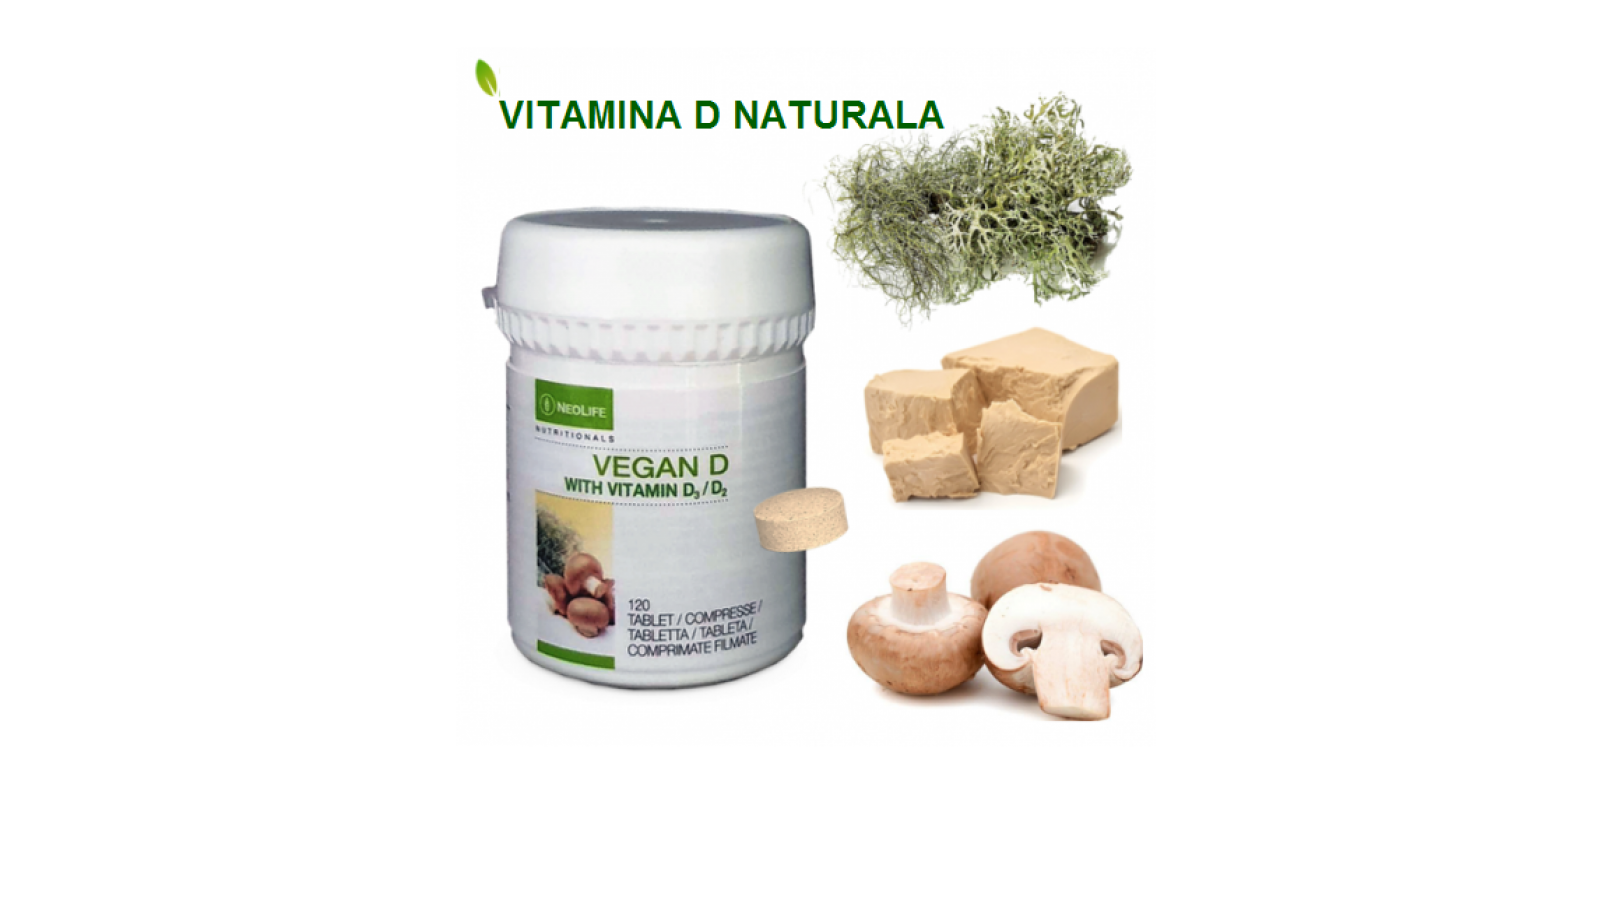 Vitamina D NeoLife - Vegan D